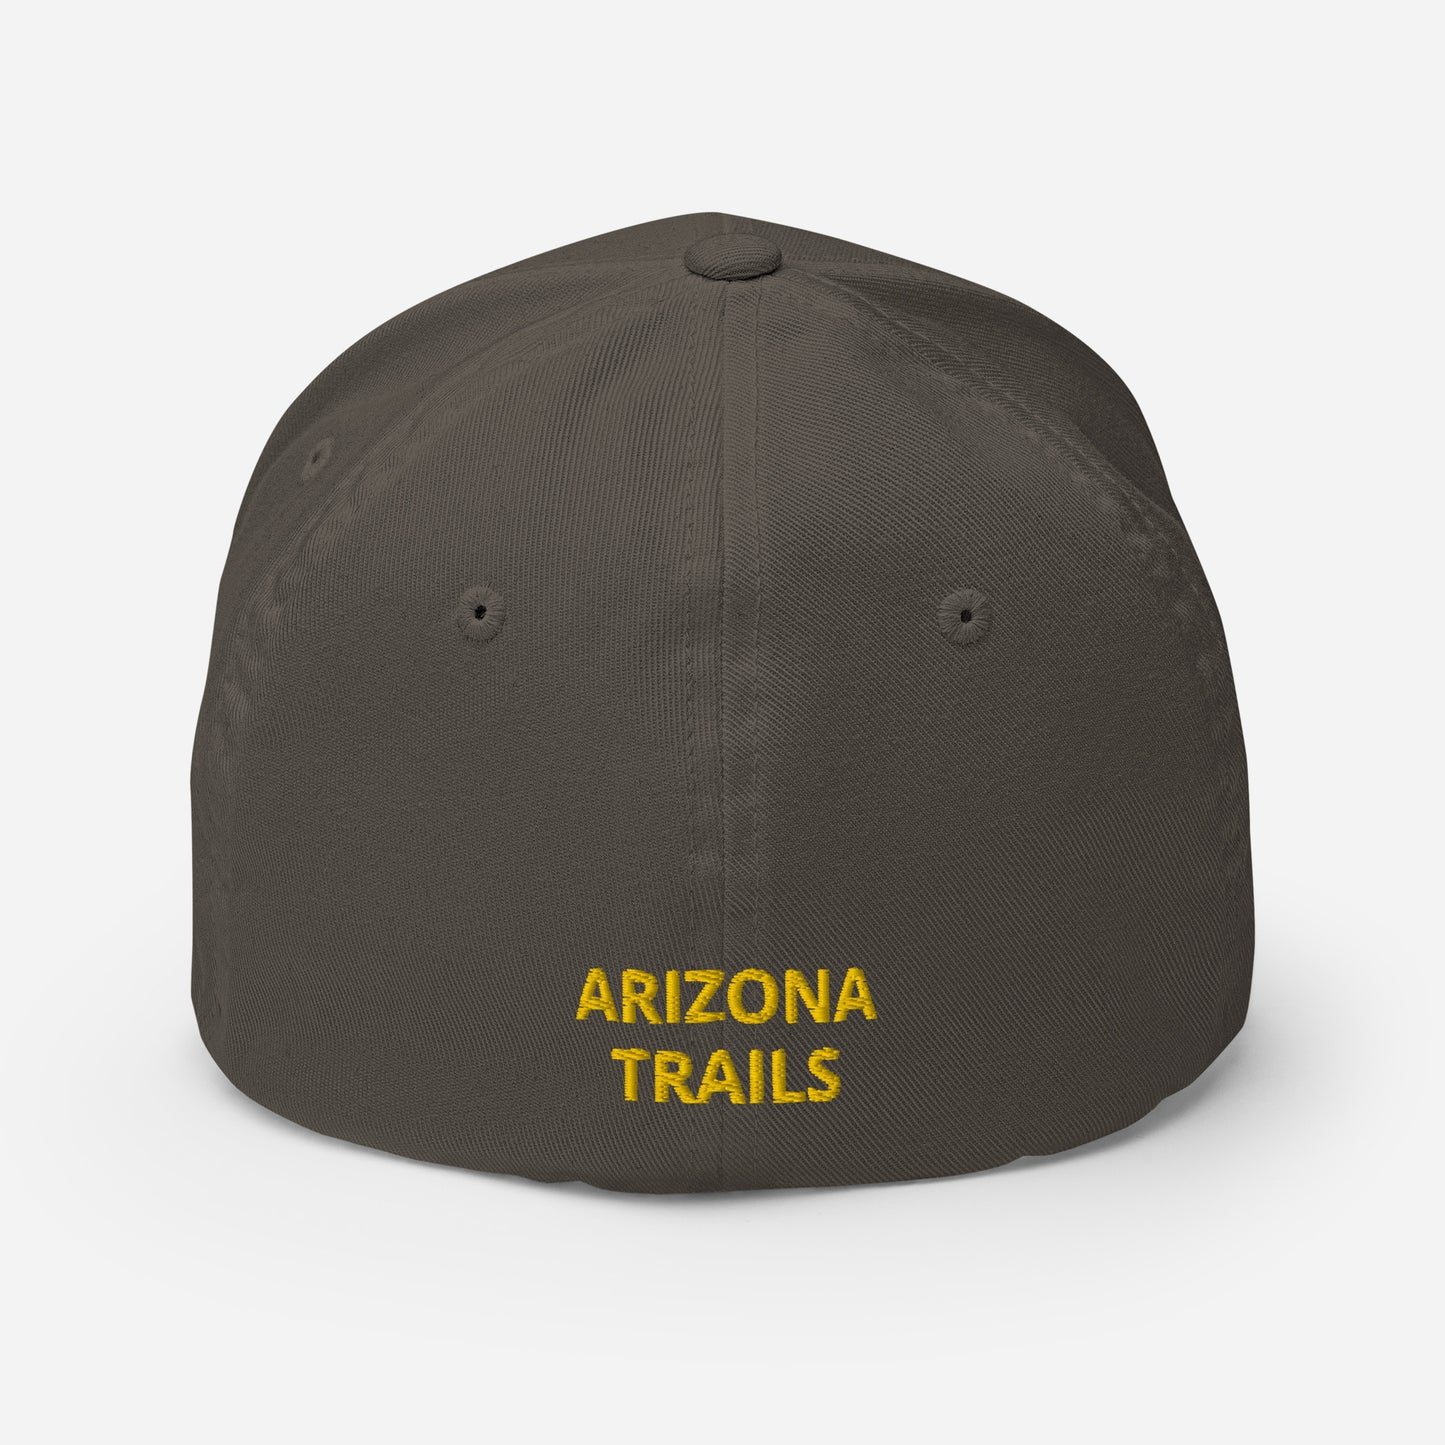 Arizona Trails Saguaro and Pine Logo Baseball - Saguaro and Pine GOLD Edition (5 colors)